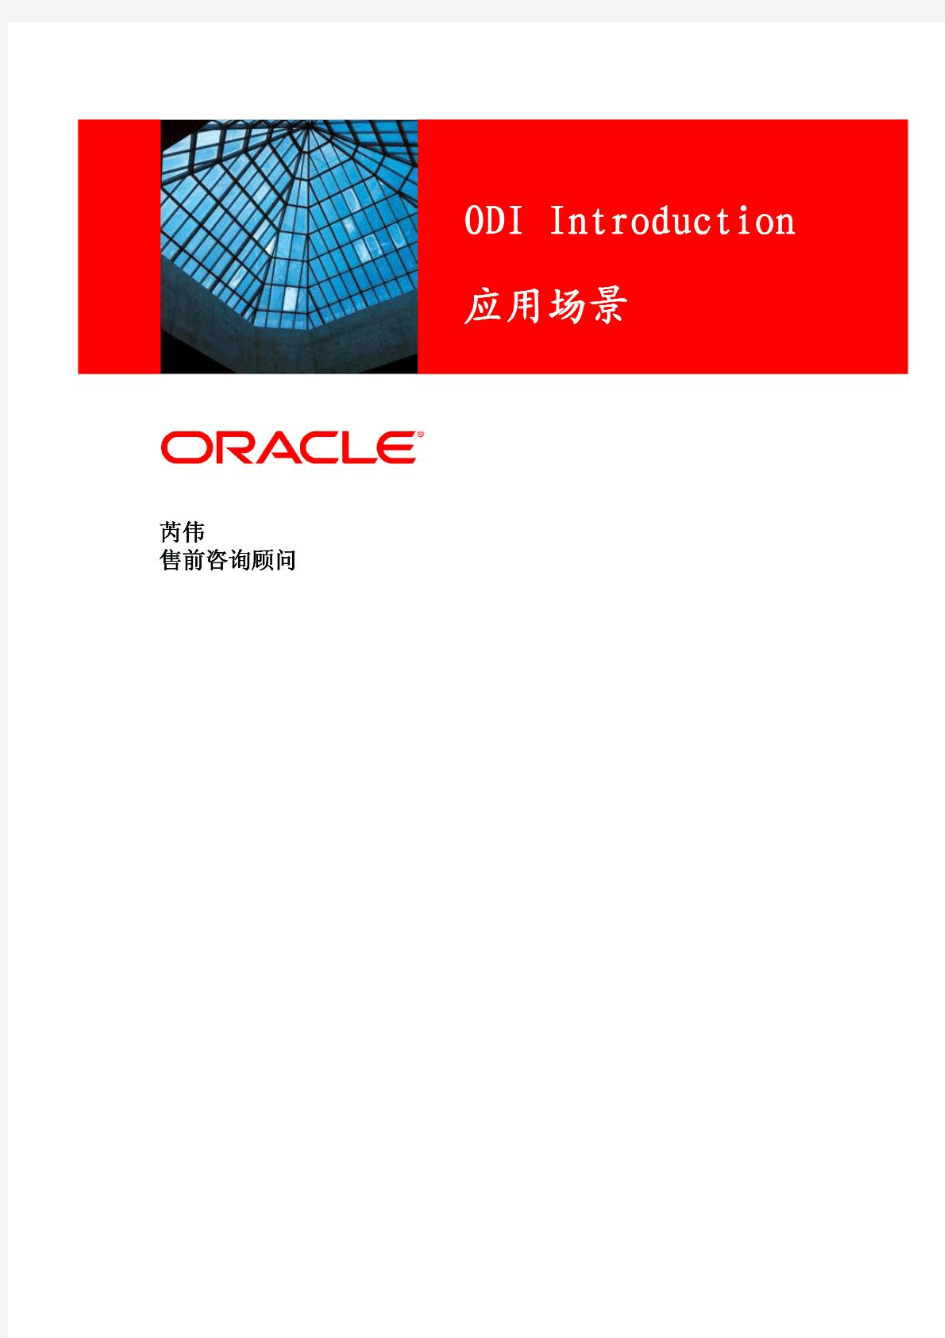 Oracle之ODI开发流程应用指南